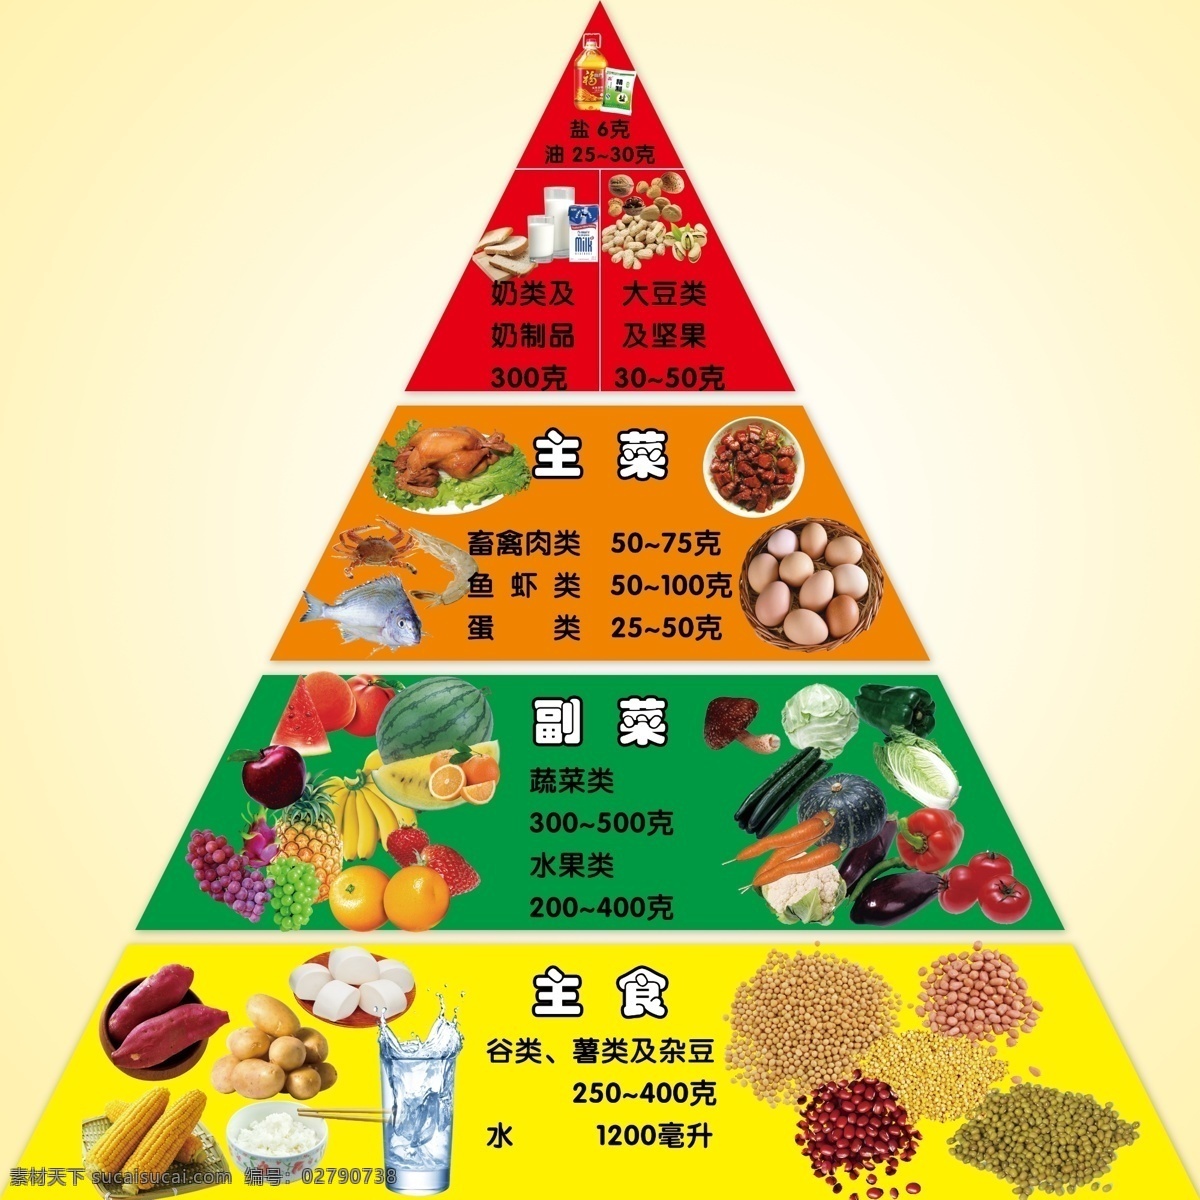 膳食宝塔 膳食 食物 金字塔 营养与保健 健康饮食 幼儿园 宝塔 模板 分层 源文件